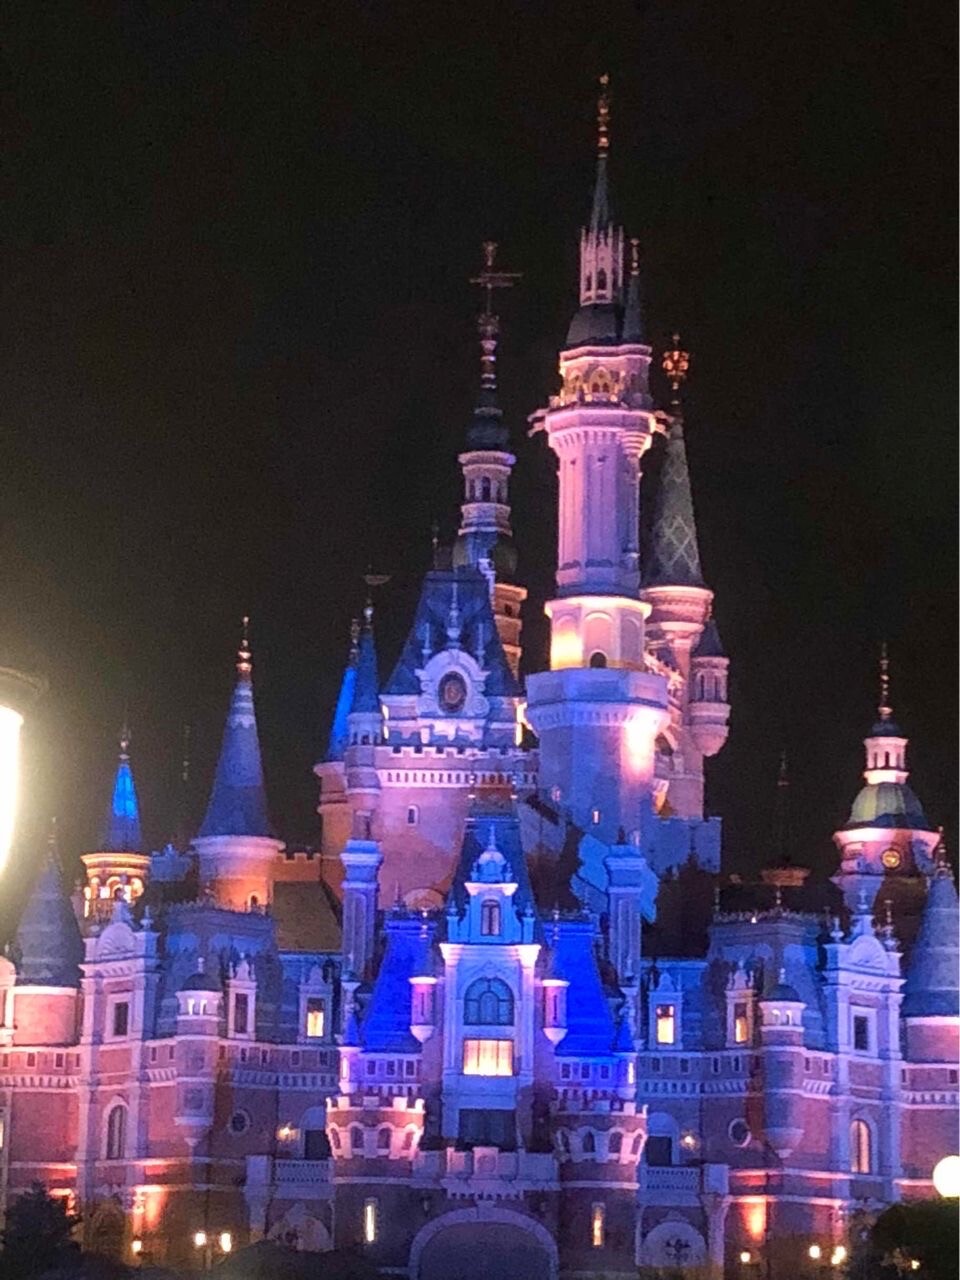 抖音迪士尼烟花背景图 迪士尼城堡夜晚背景图 微信迪士尼烟花背景图高清